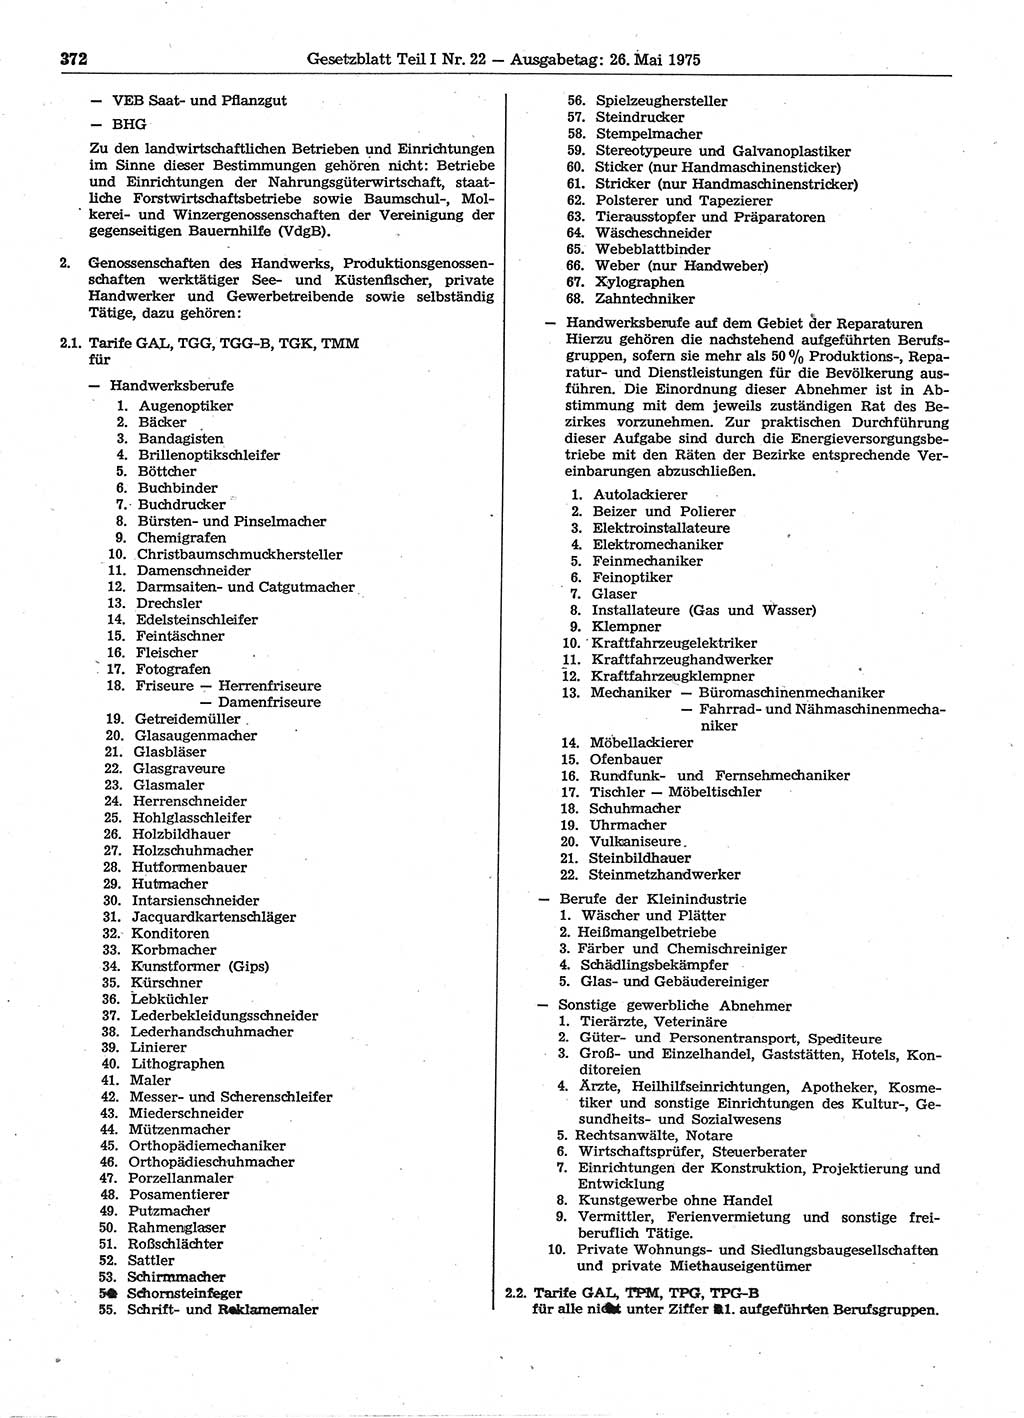 Gesetzblatt (GBl.) der Deutschen Demokratischen Republik (DDR) Teil Ⅰ 1975, Seite 372 (GBl. DDR Ⅰ 1975, S. 372)